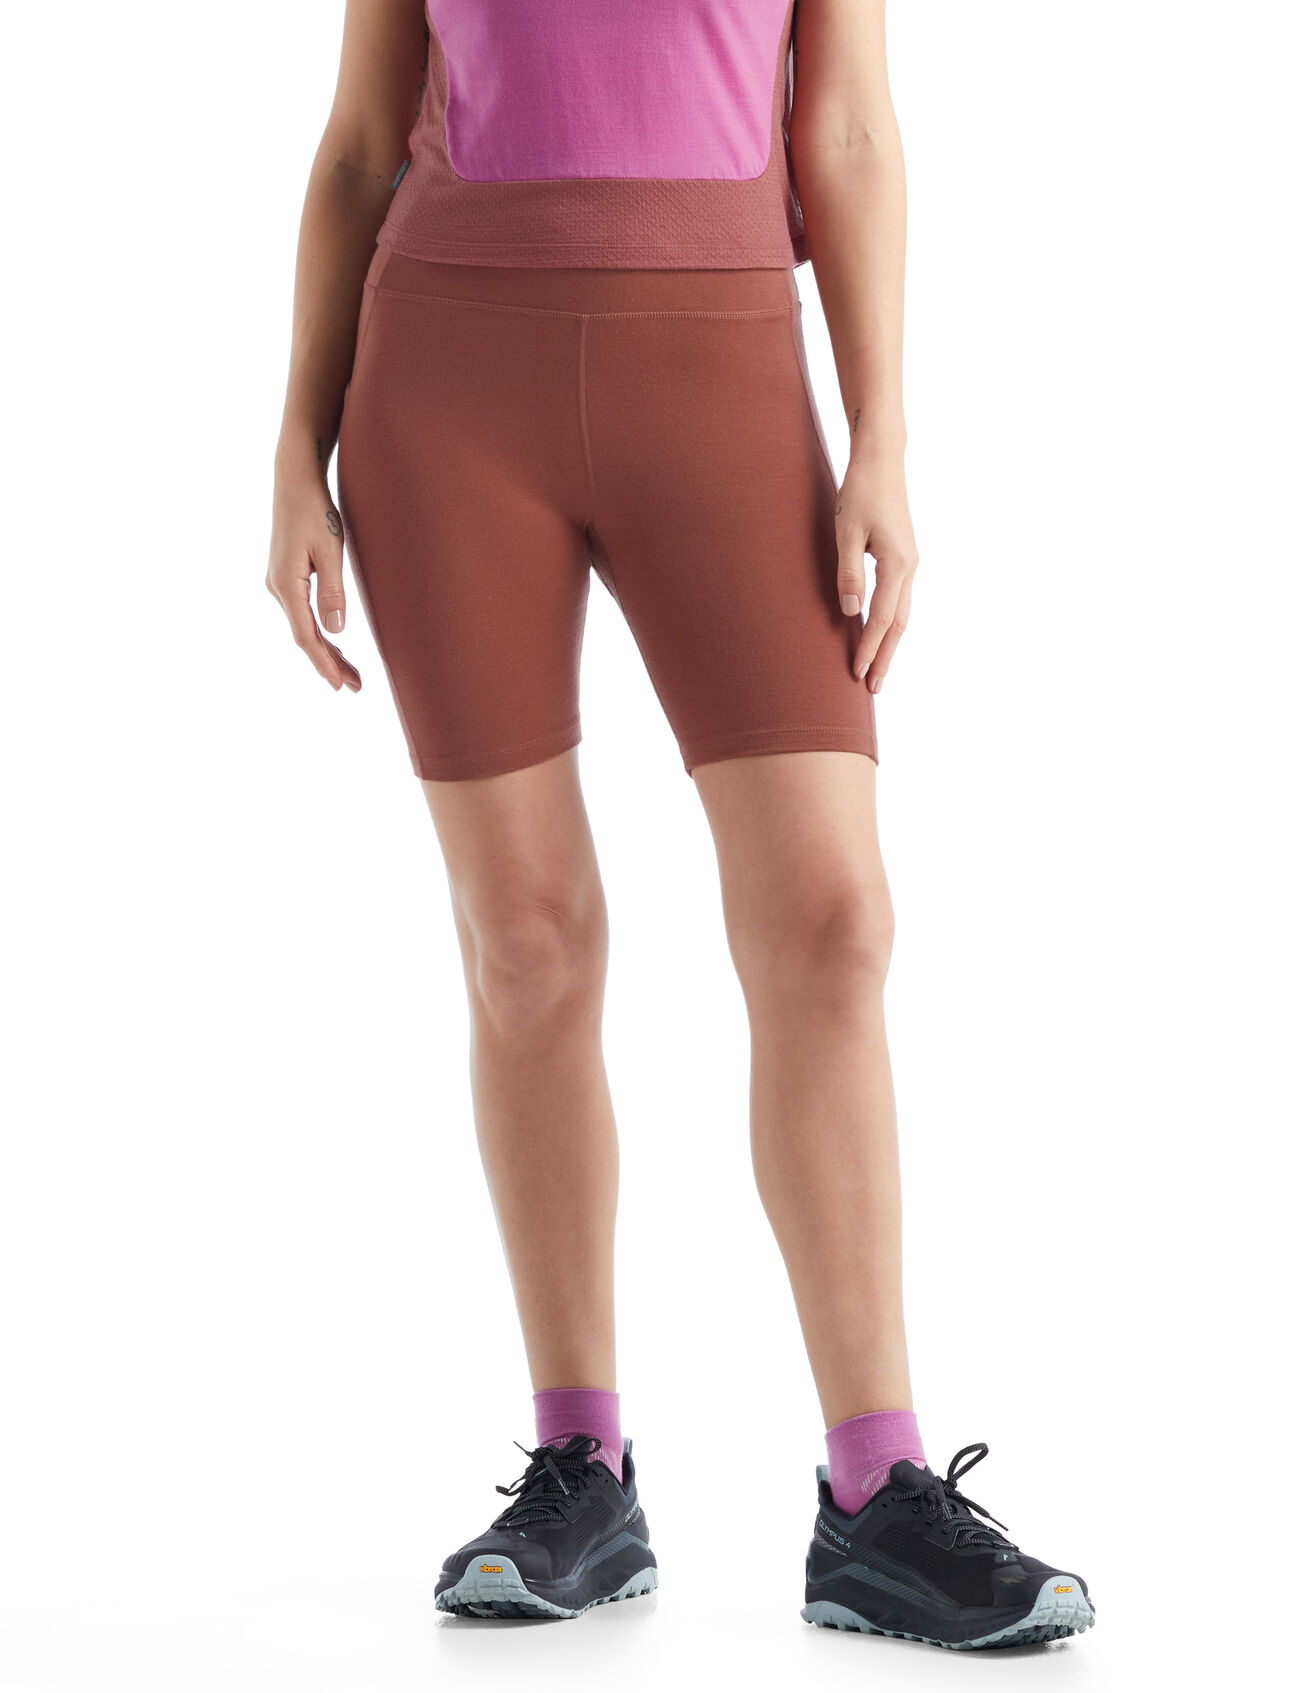 Dam Fastray Shorts i merino med hög midja  Fastray shorts med hög midja är ett par funktionella, figurnära shorts för aktiv träning på löpspåret eller ute i naturen. De är tillverkade i en stretchig merinoullblandning med hög midja för extra täckning. 